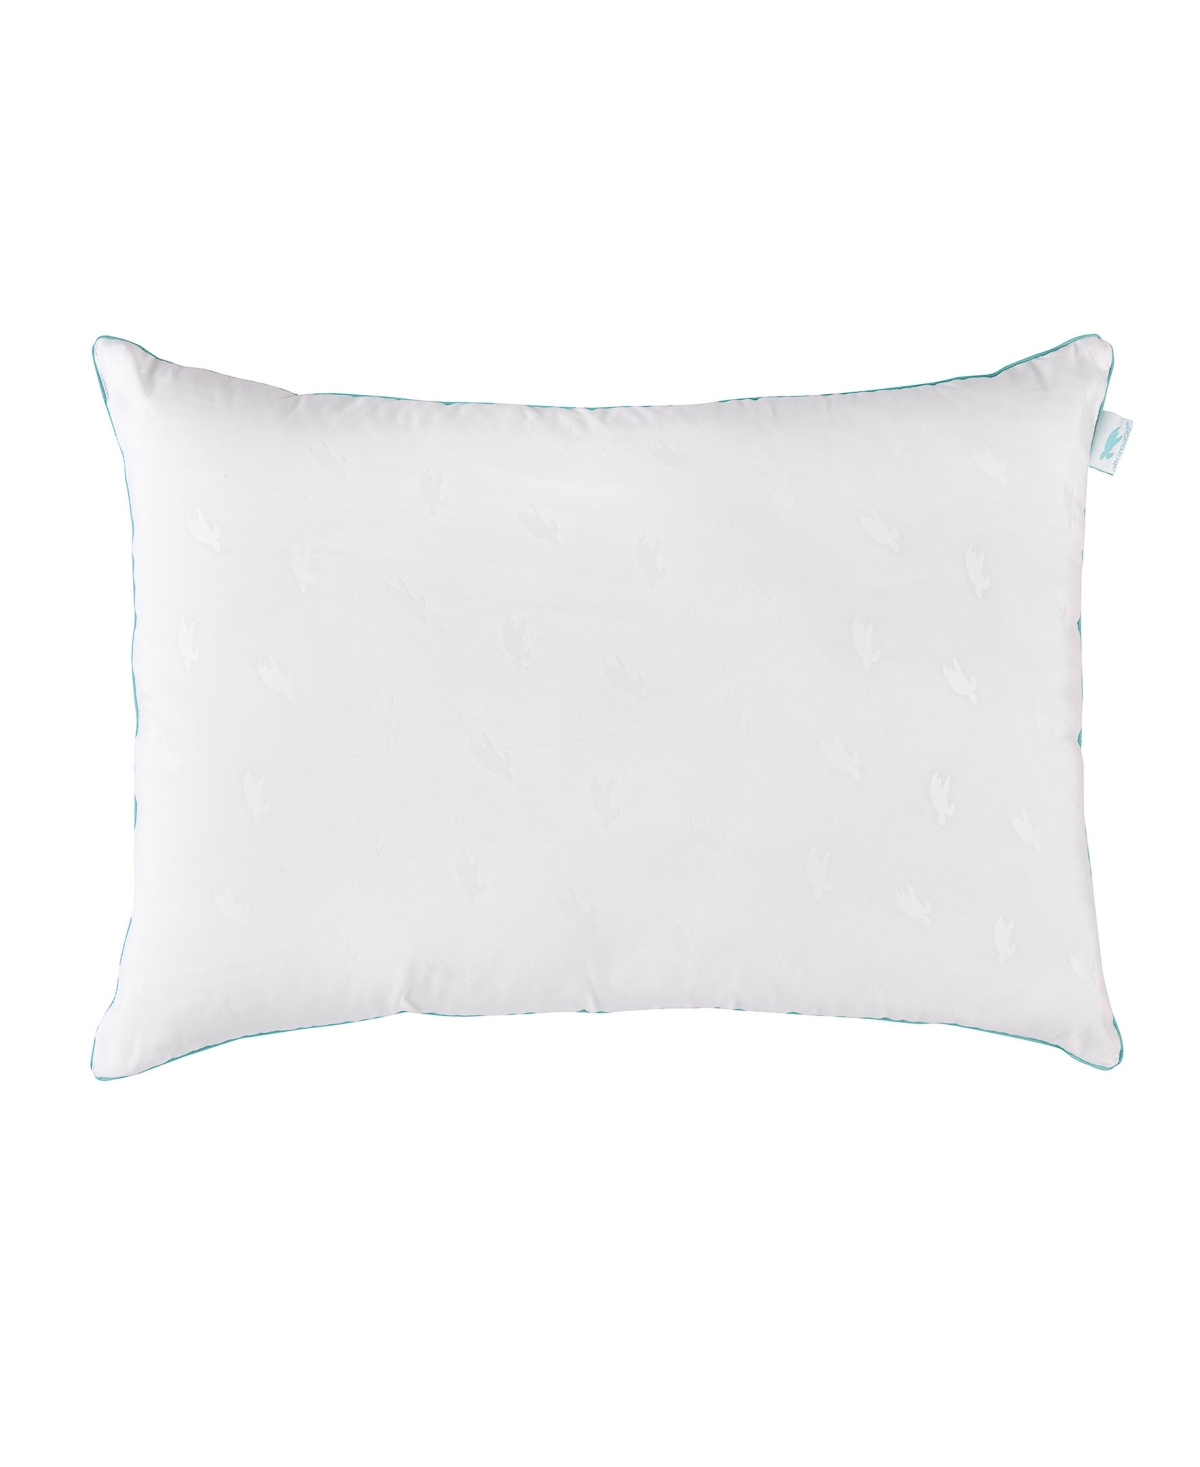 13476011 AllerEase Blue Pillow, Standard/Queen sku 13476011